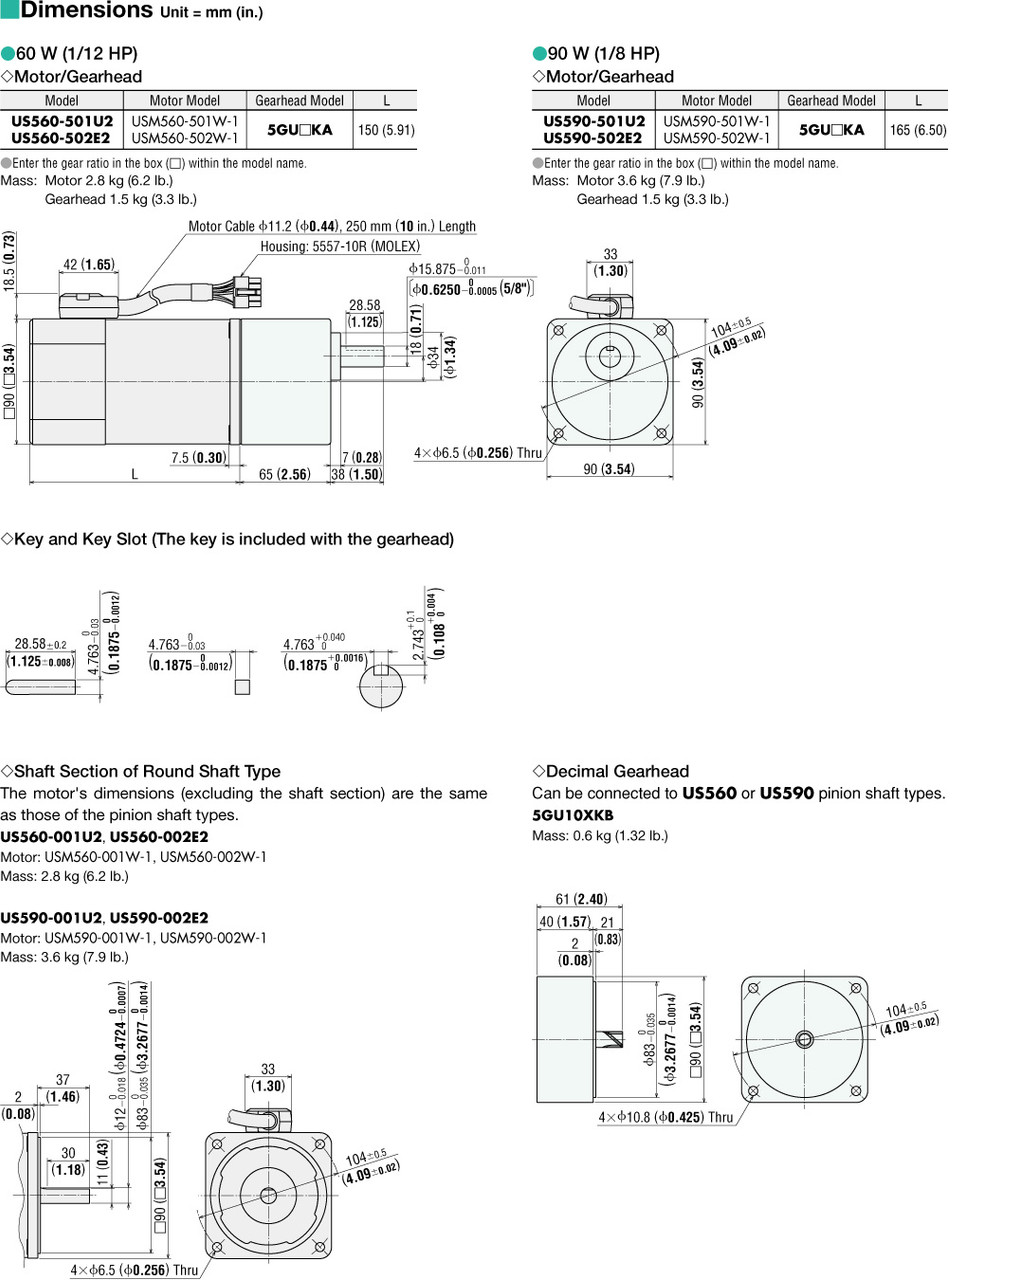 USM560-502W-1 / 5GU180KA - Dimensions